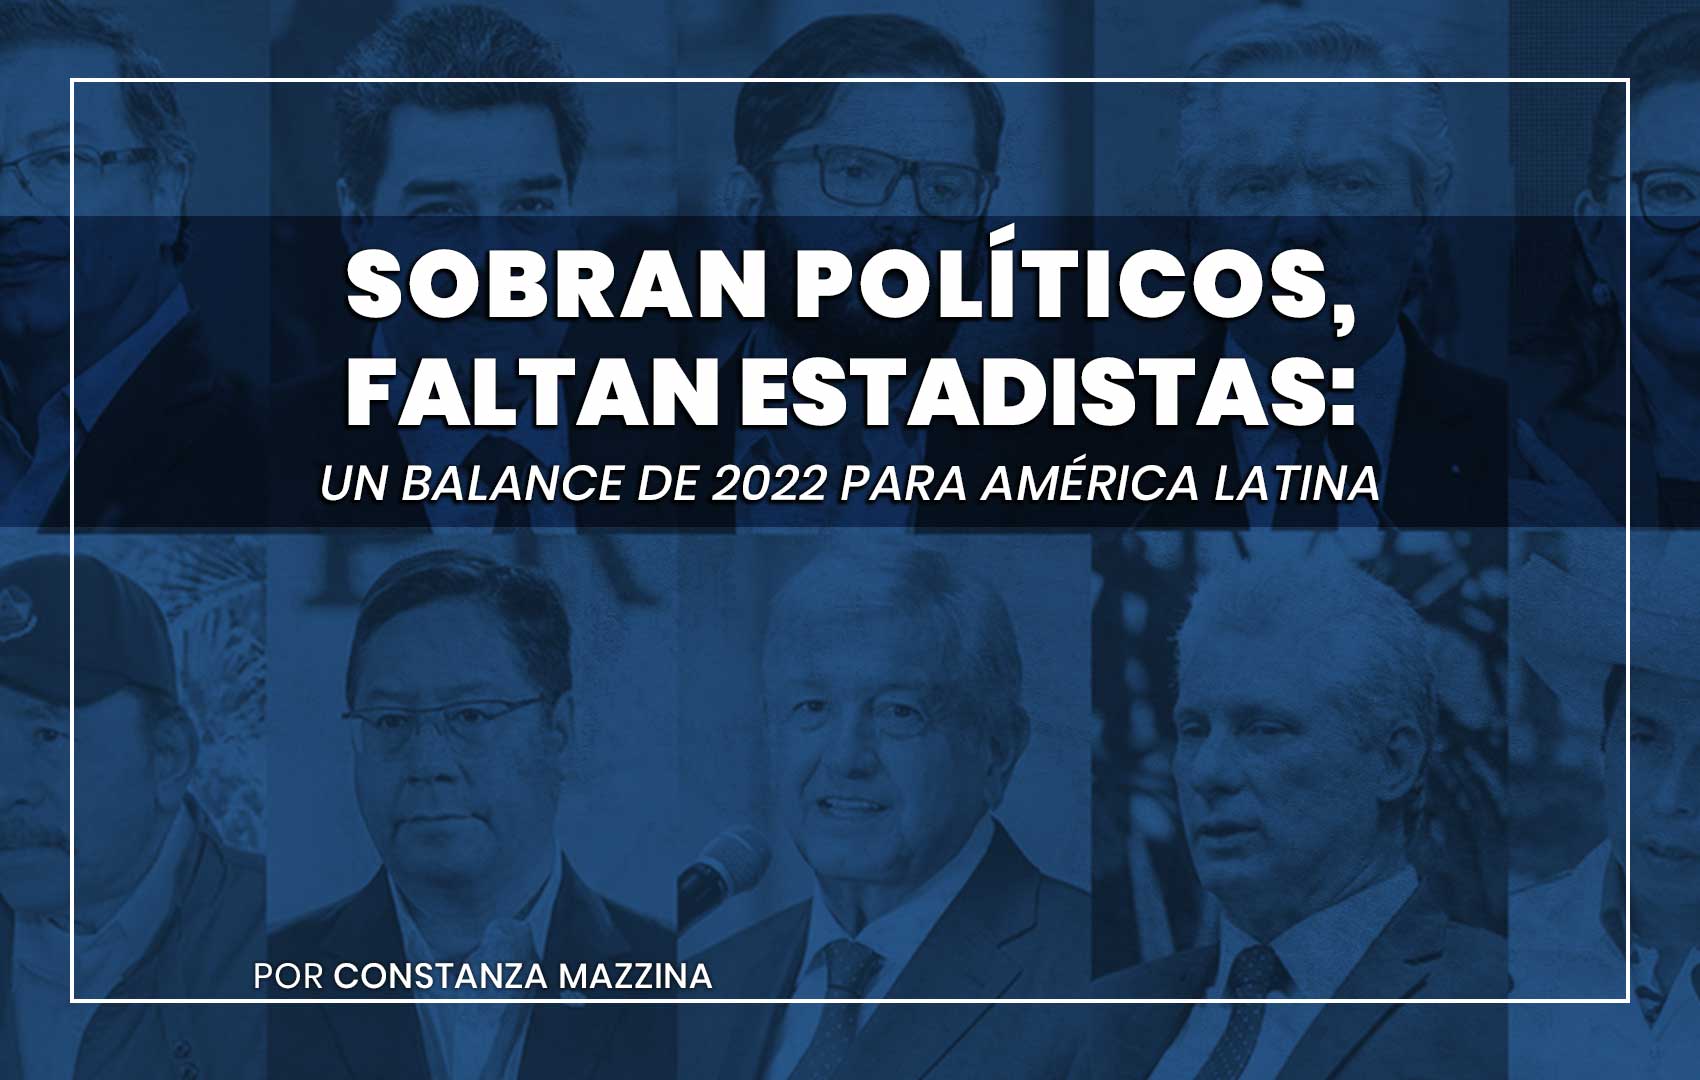 Sobran políticos, faltan estadistas: un balance de 2022 para América Latina